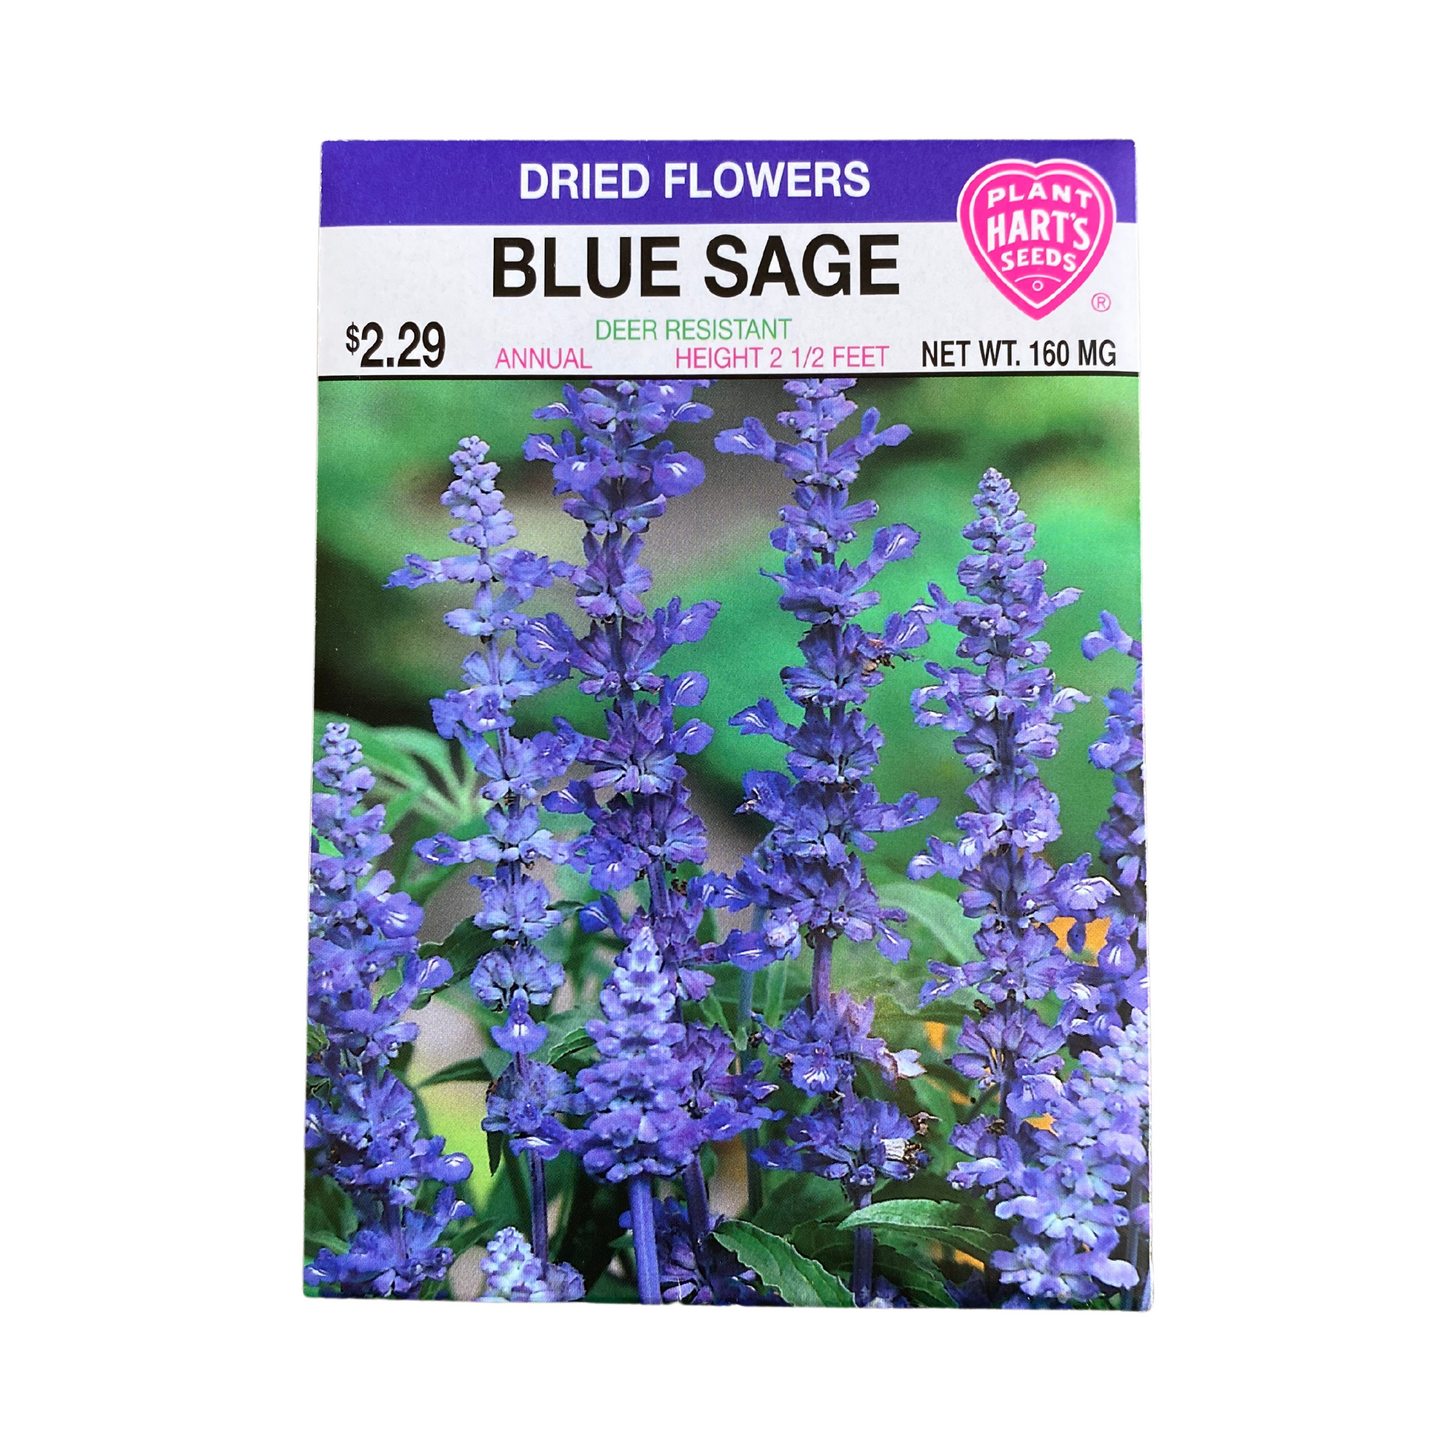 Blue Sage